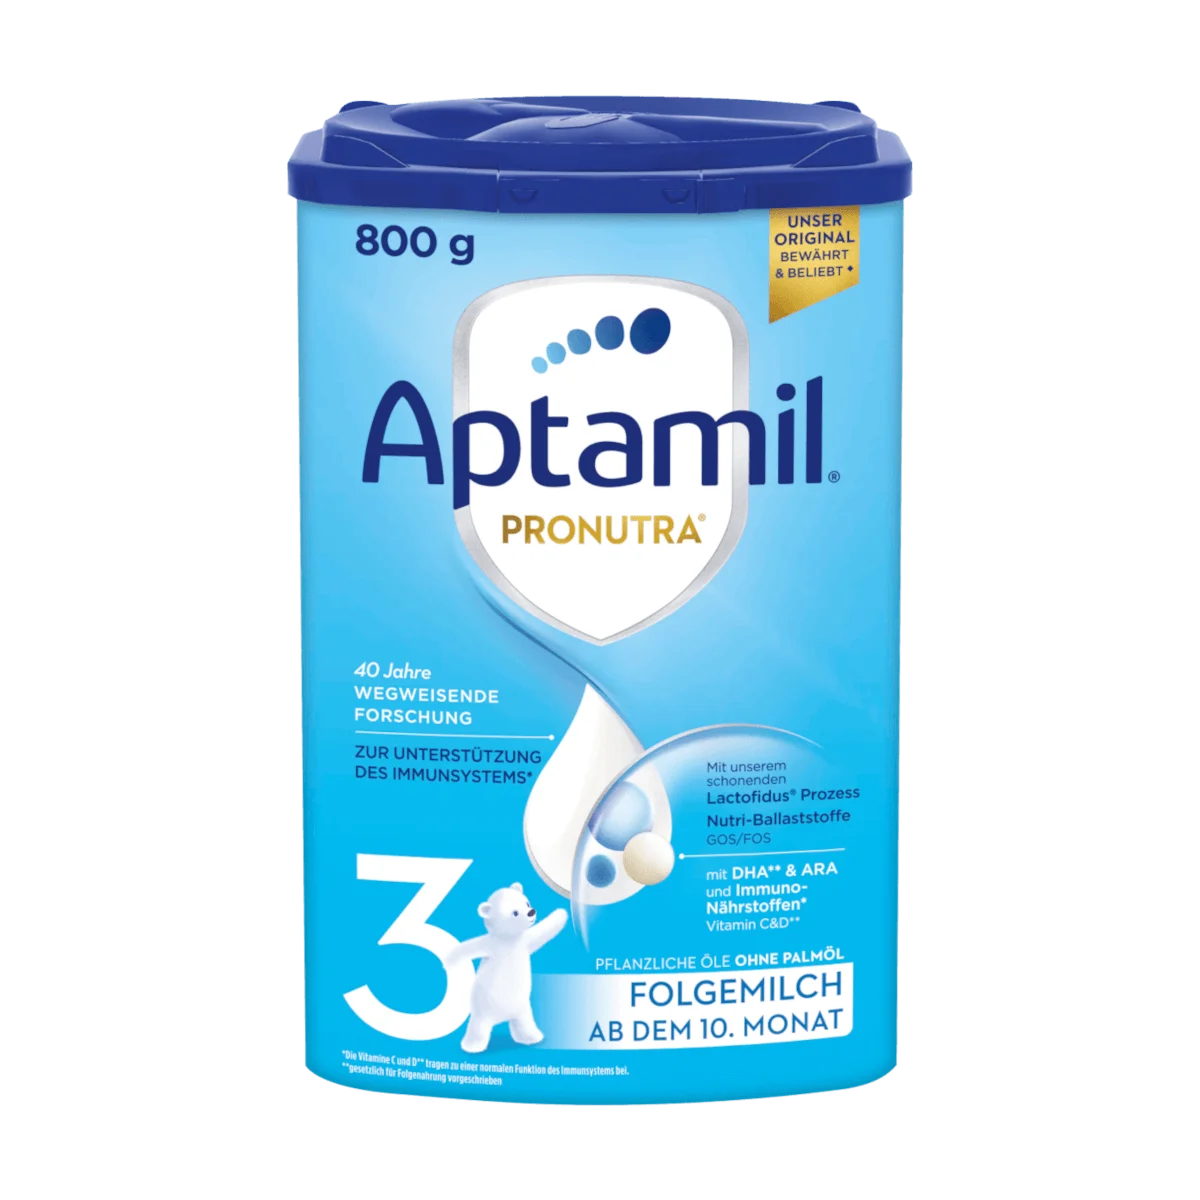 Aptamil Pronutra 3 Folgemilch ab dem 10. Monat, 800 g